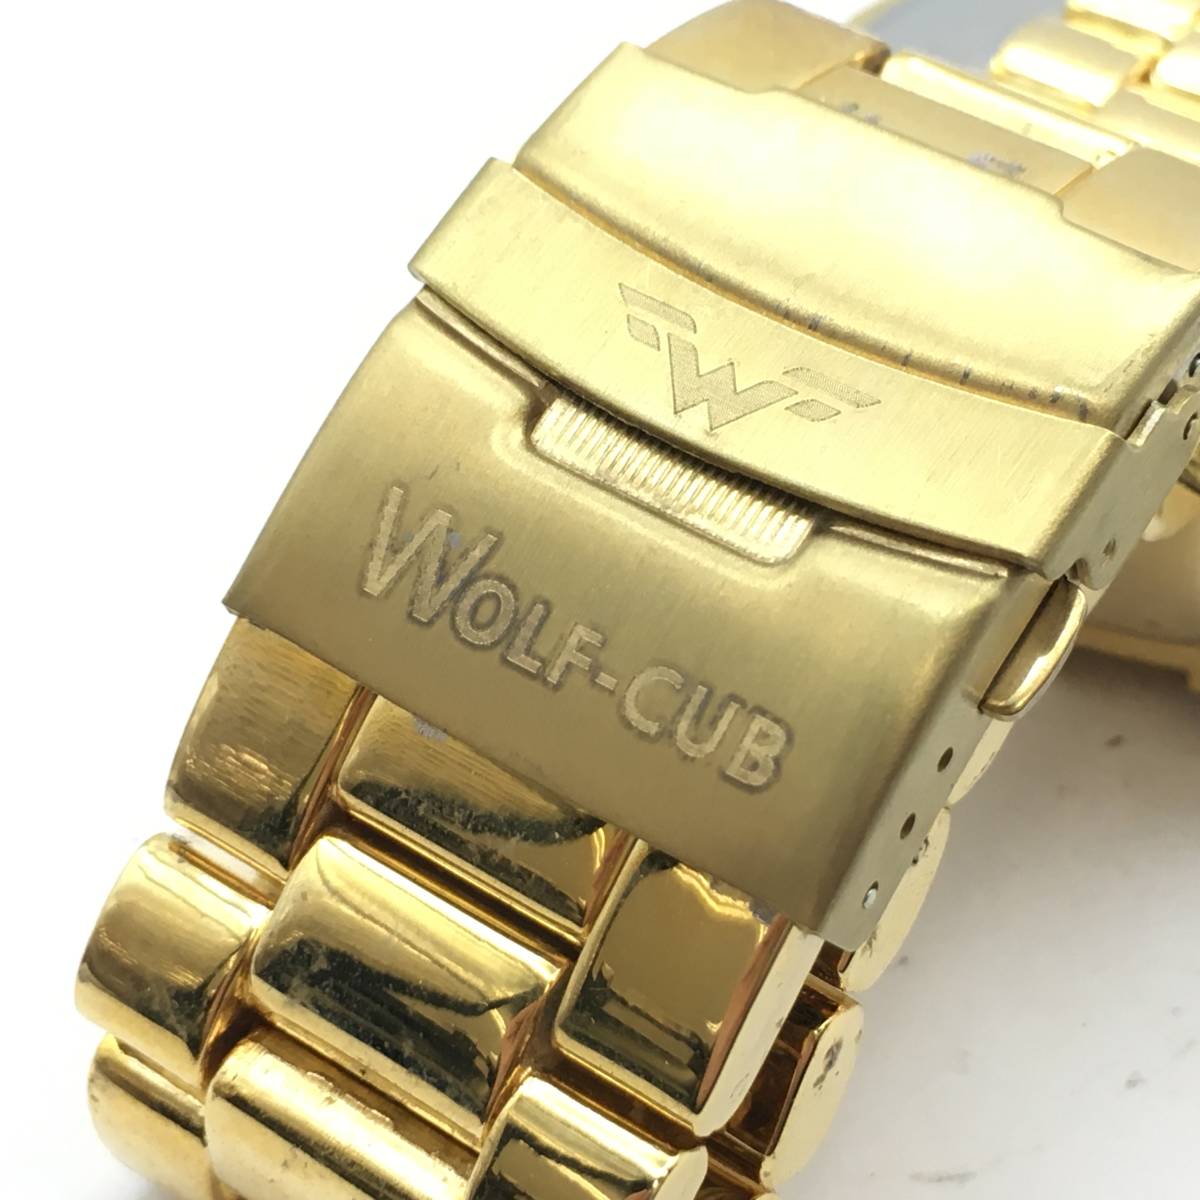 ◯P10-68 WOLF-CUB 3針 Date デイト メンズ クォーツ 腕時計 W:A321 _画像6